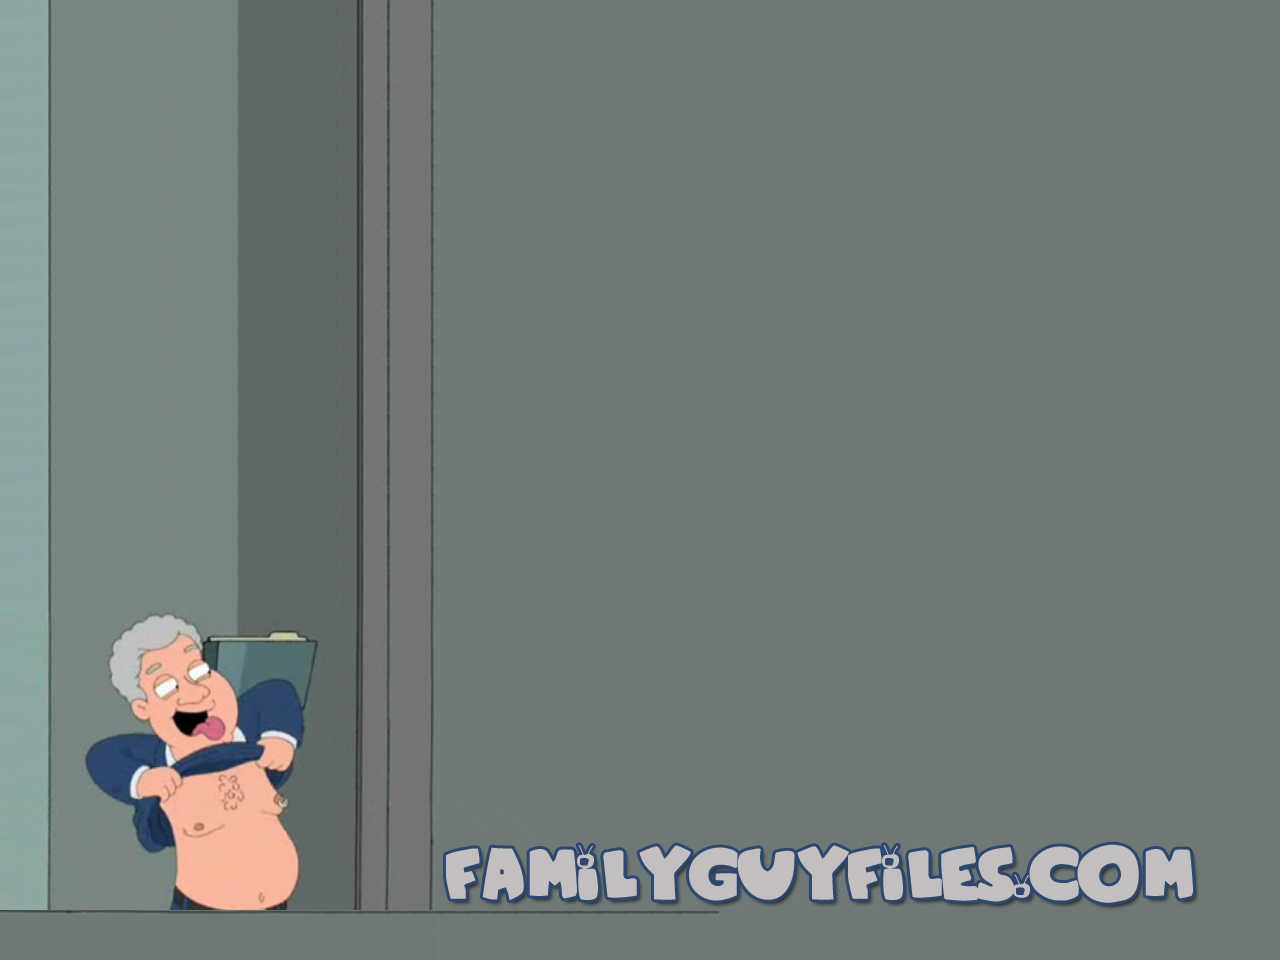 Bill Clinton Family Guy Wallpaper